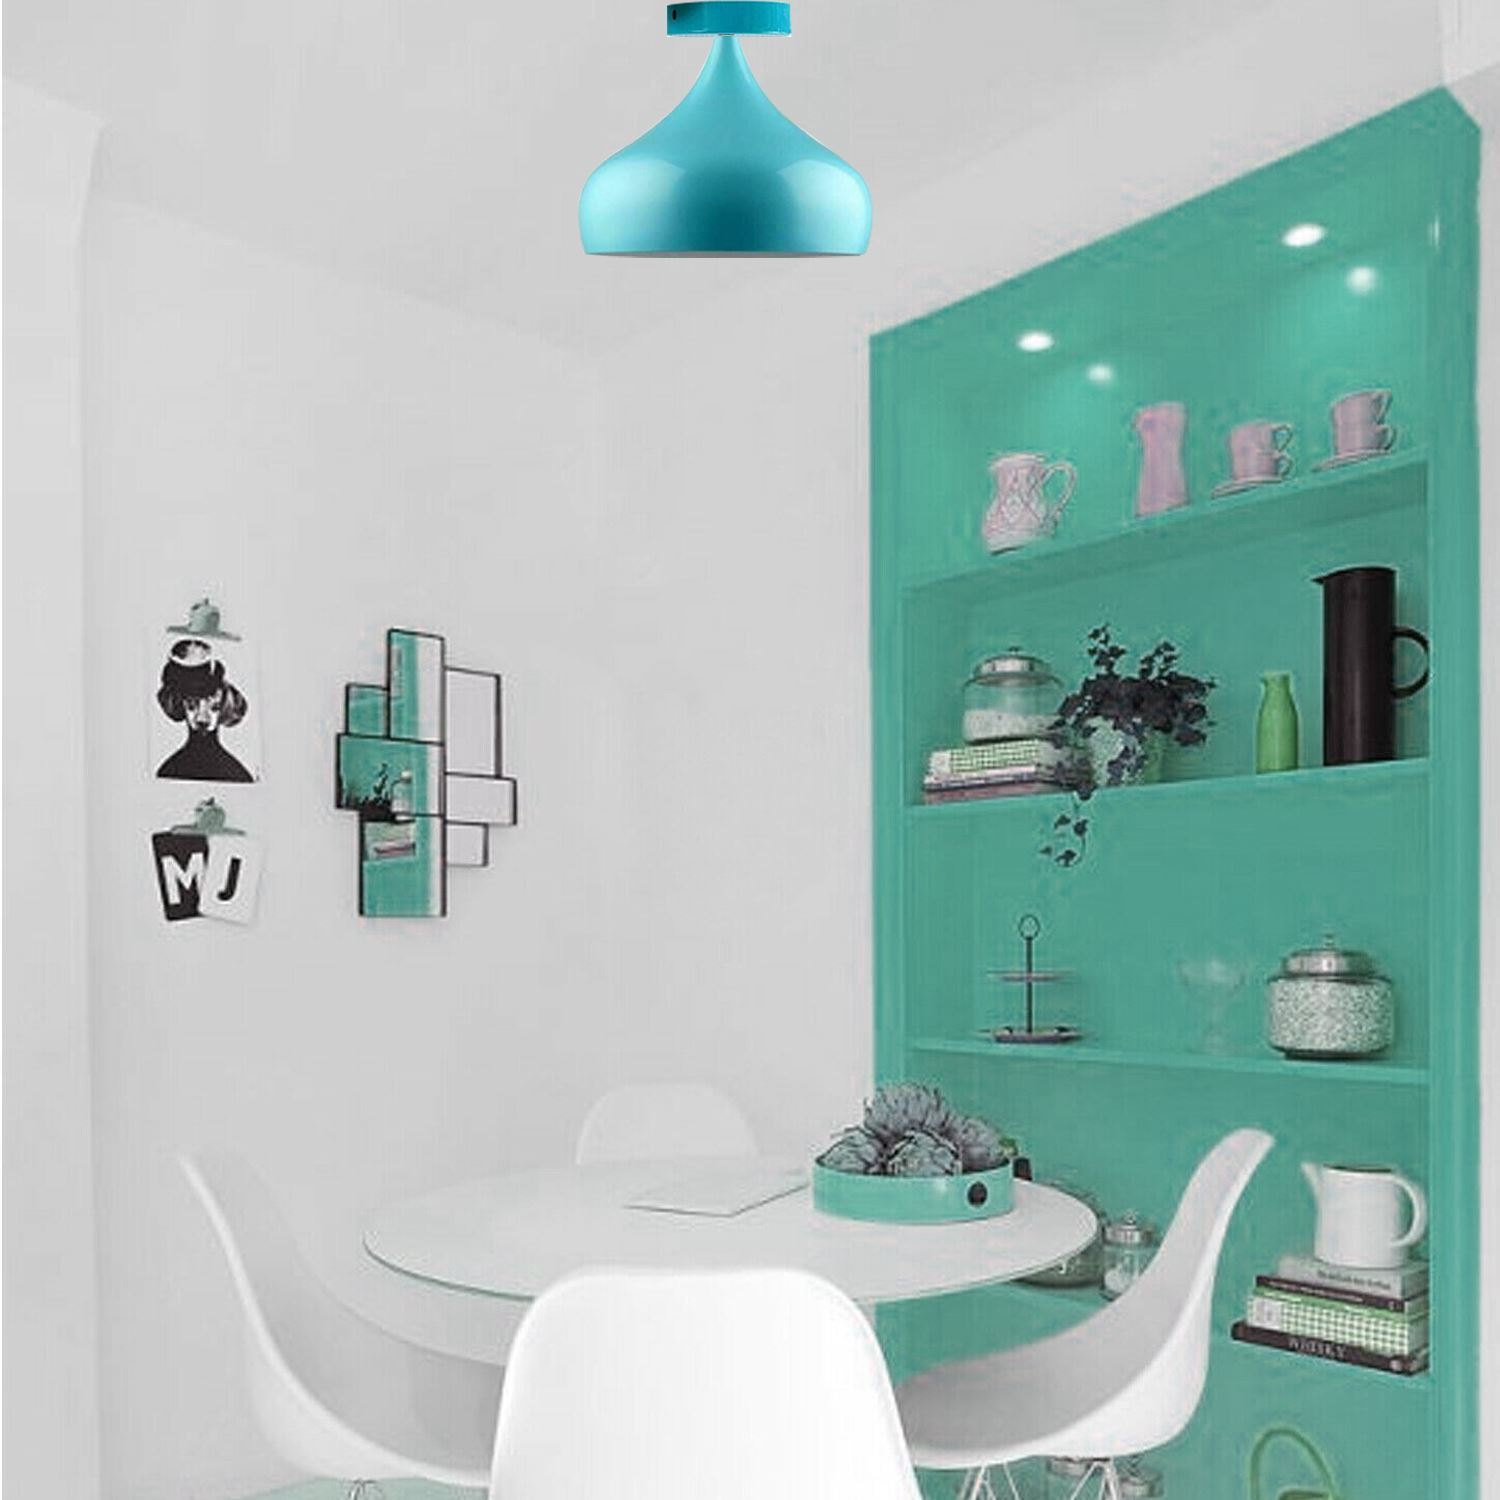 Chandelier Style Modern Ceiling Light Shade Pendant Lamp UK~1326 - LEDSone UK Ltd